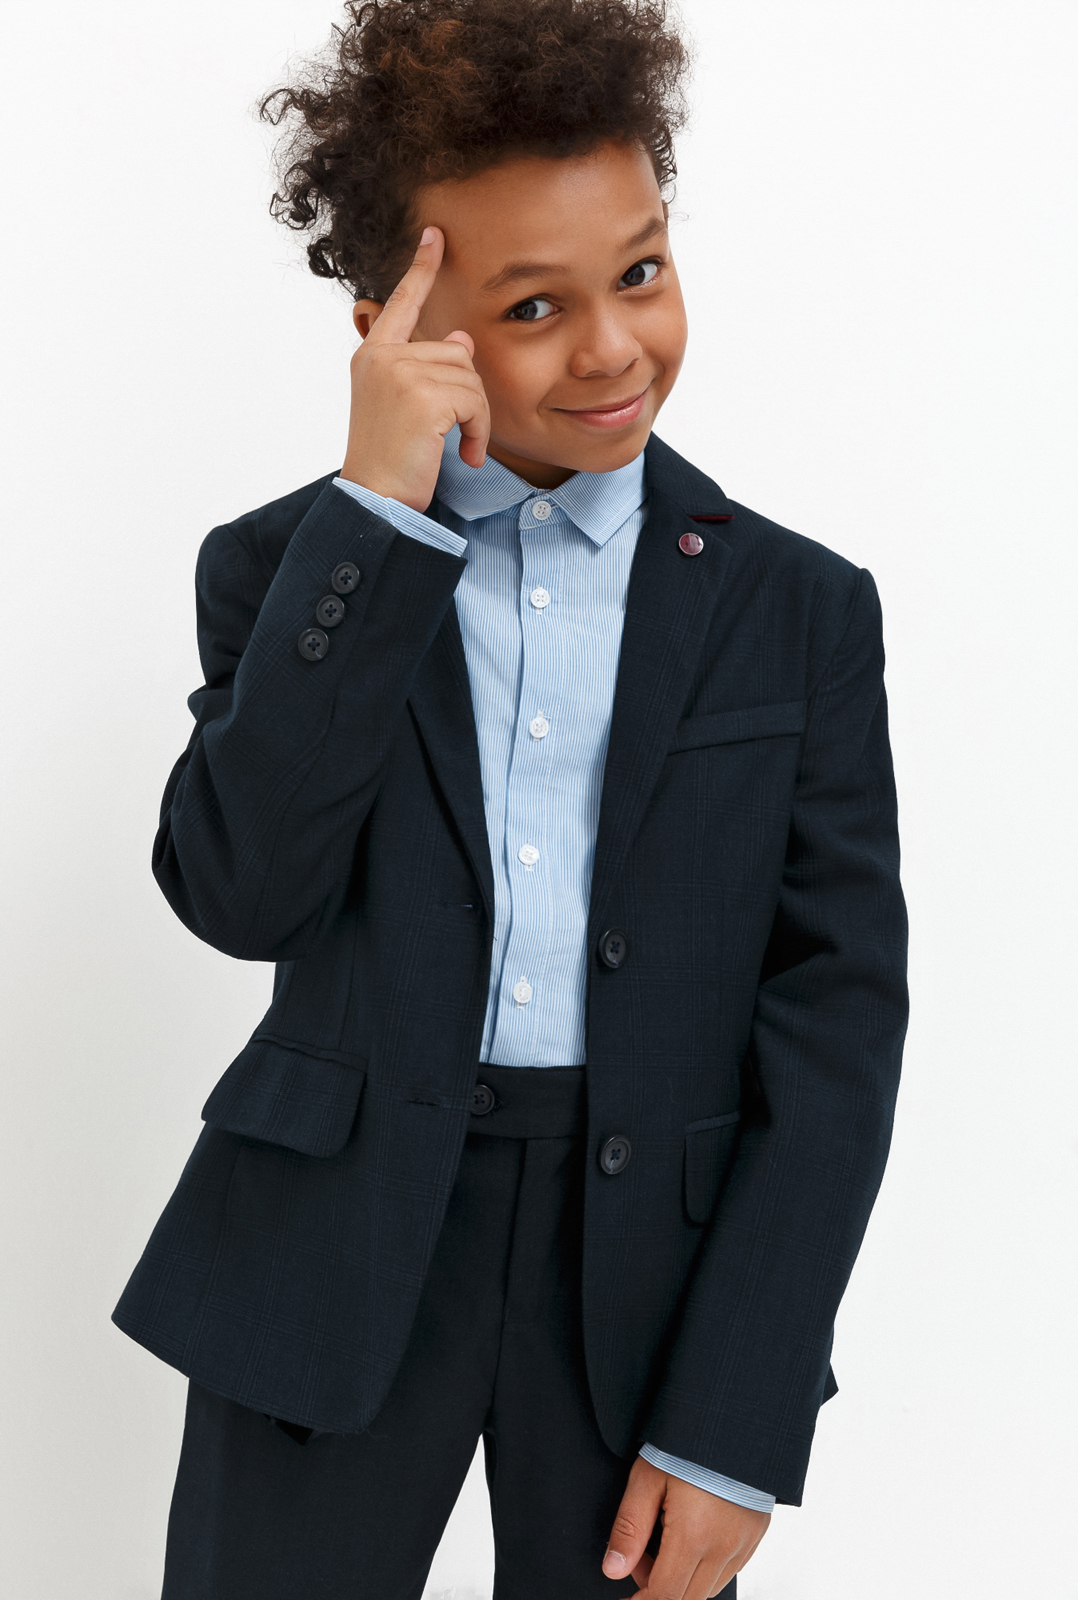 Пиджак для мальчика Acoola Chandler, цвет: темно-голубой. 20140130030_600. Размер 164